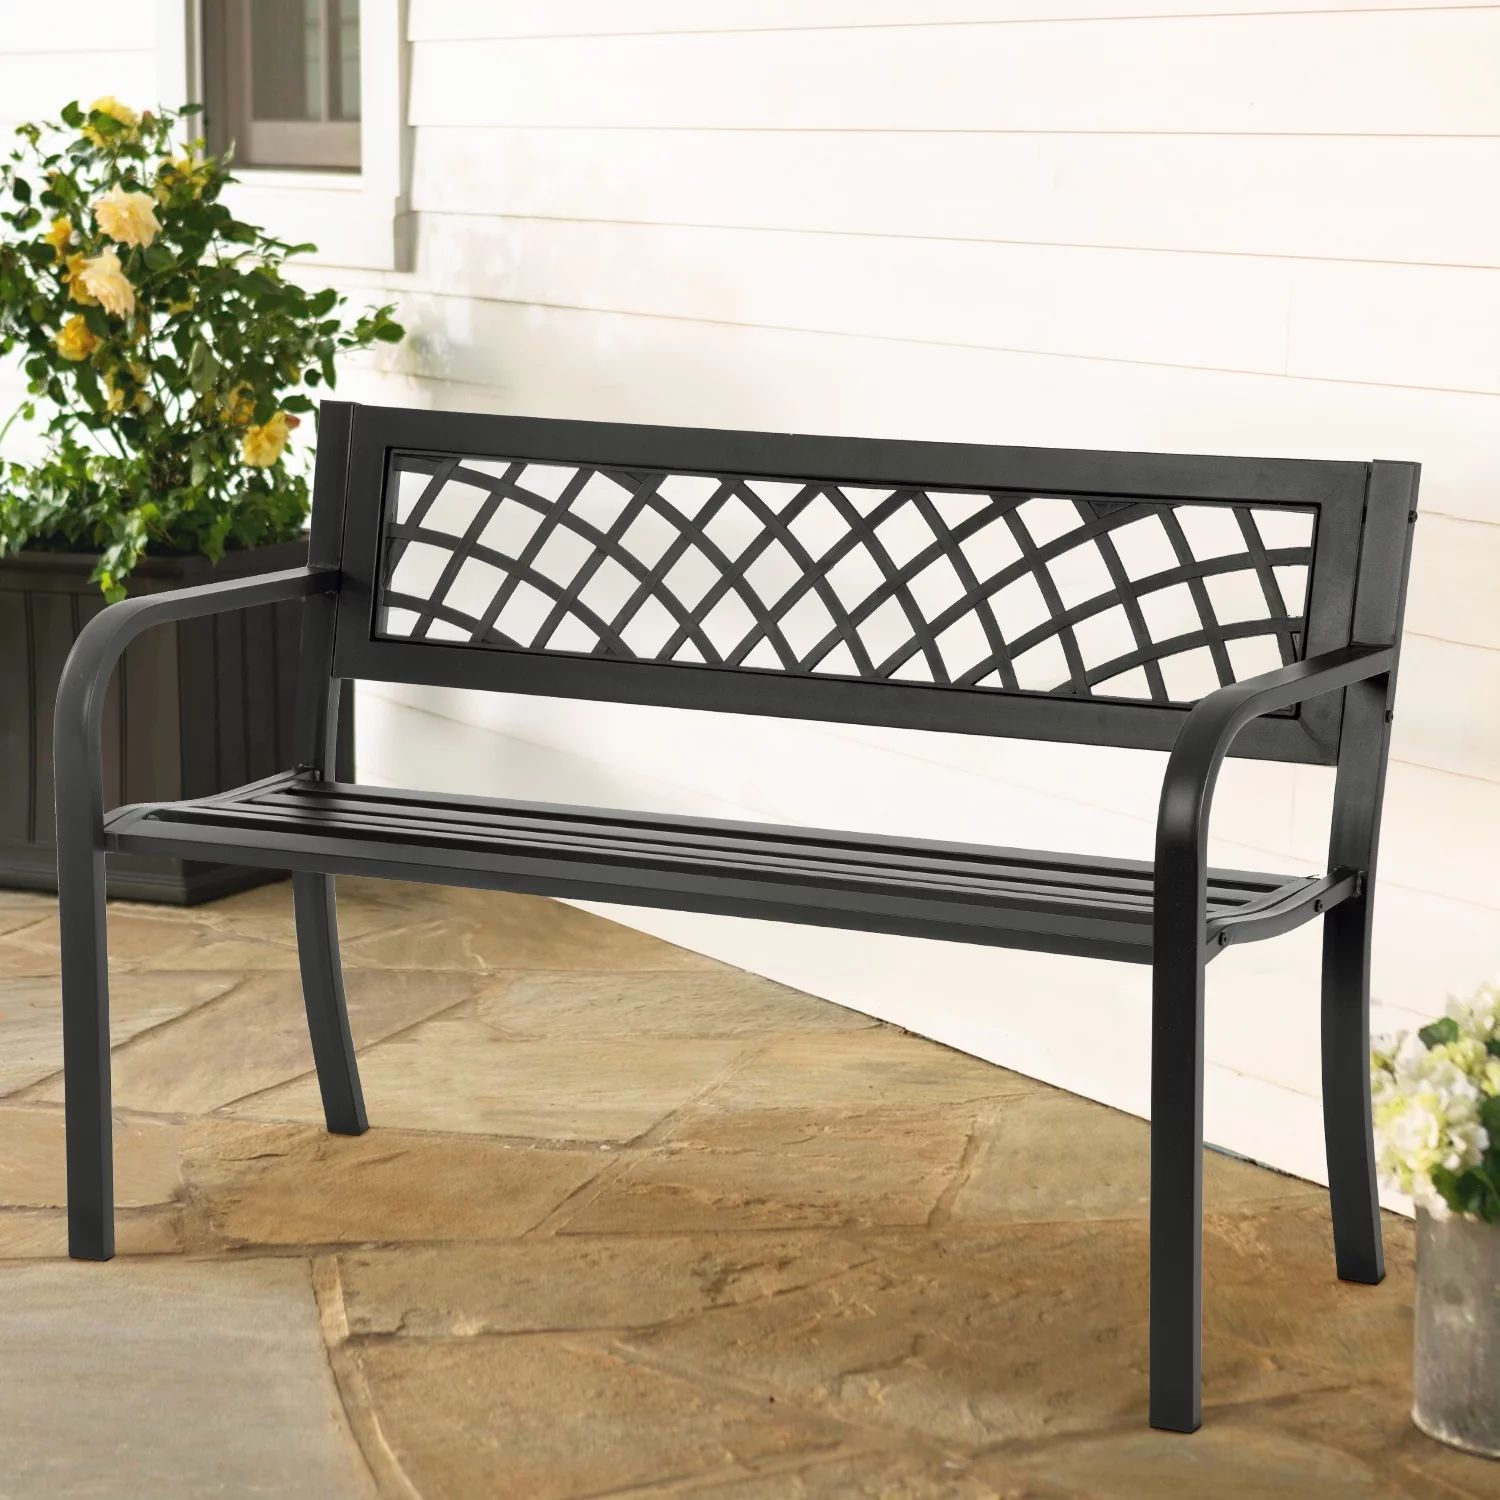 YRLLENSDAN 45.5in Black Outdoor Bench Metal Garden Bench for Outdoors, Patio Bench Black for Park... | Walmart (US)